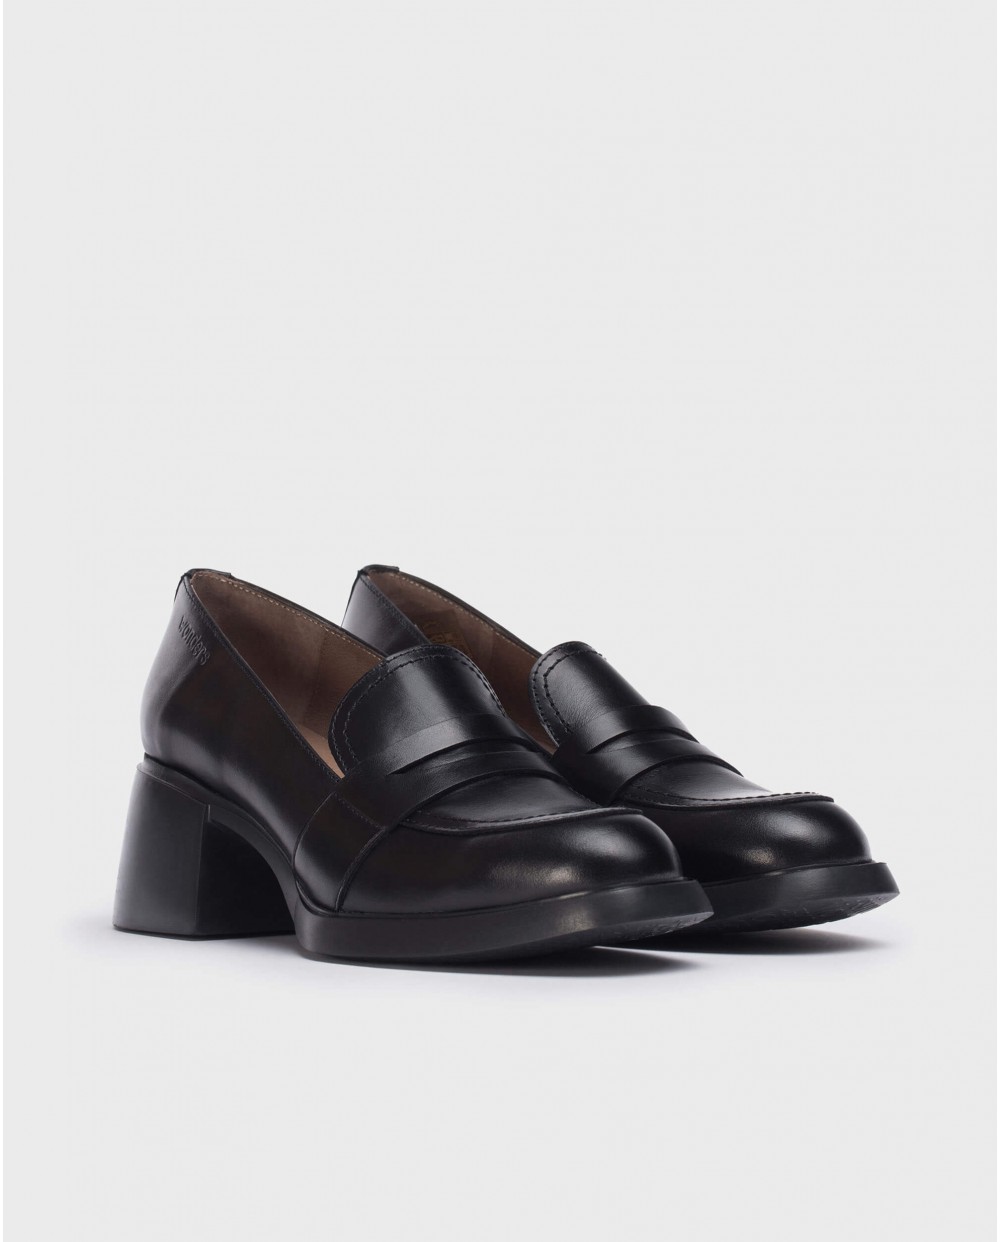 Black shoes Durham